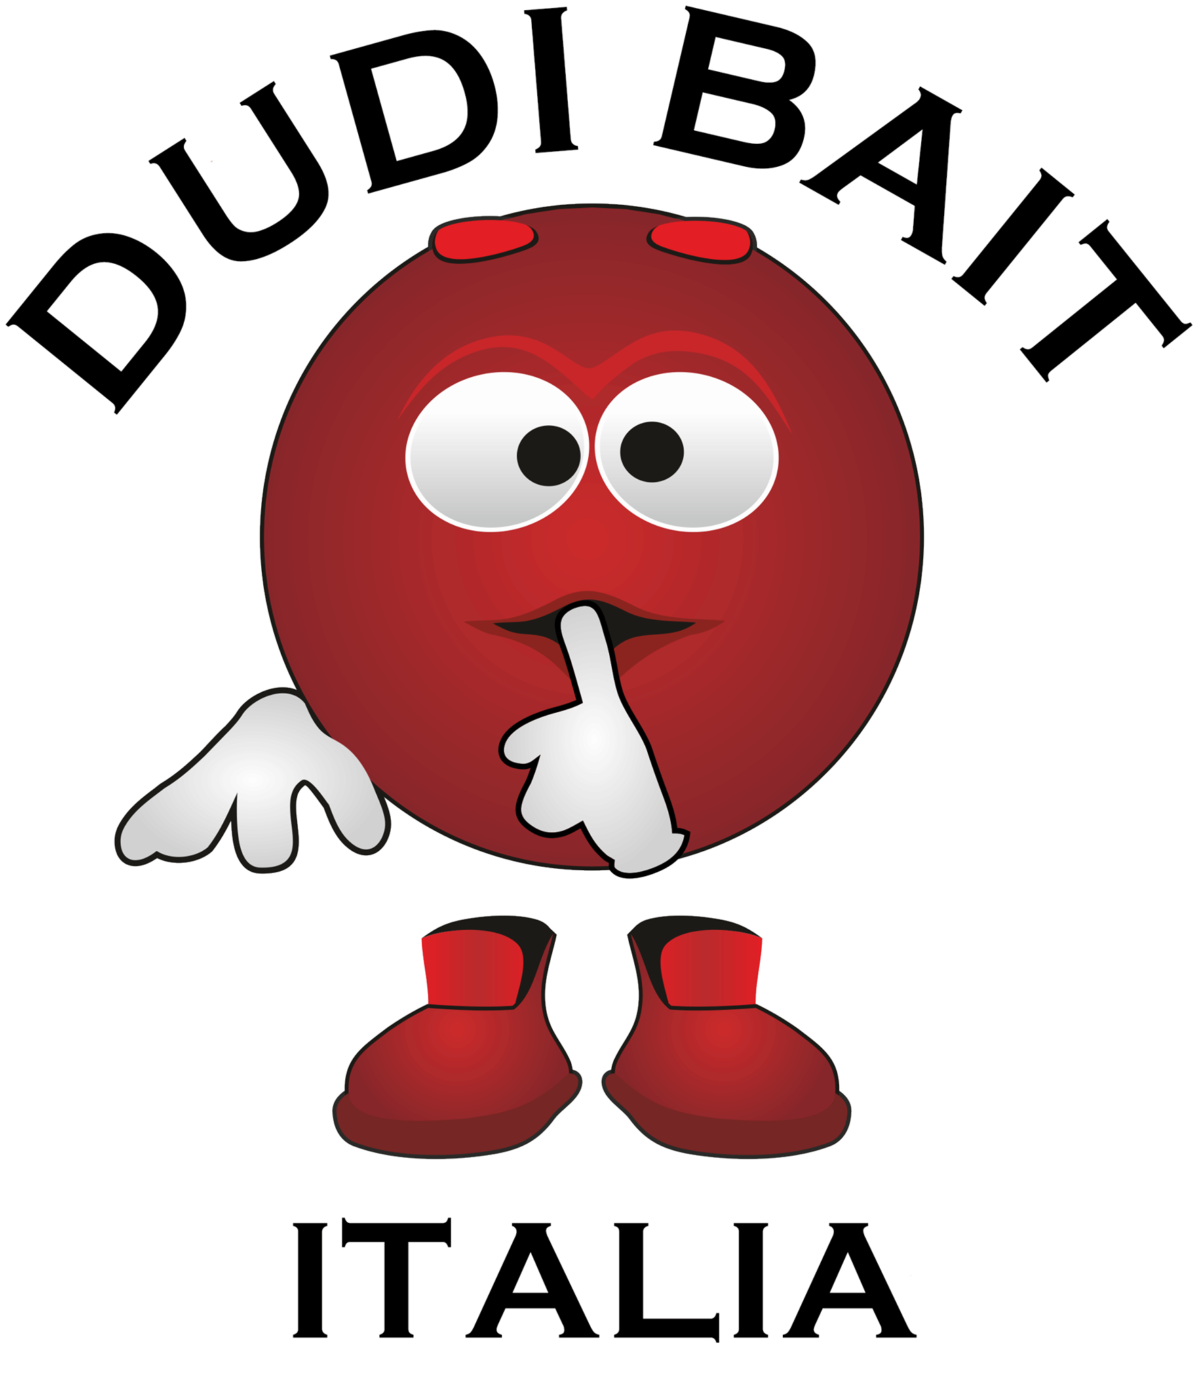 DUDI BAIT ITALIA